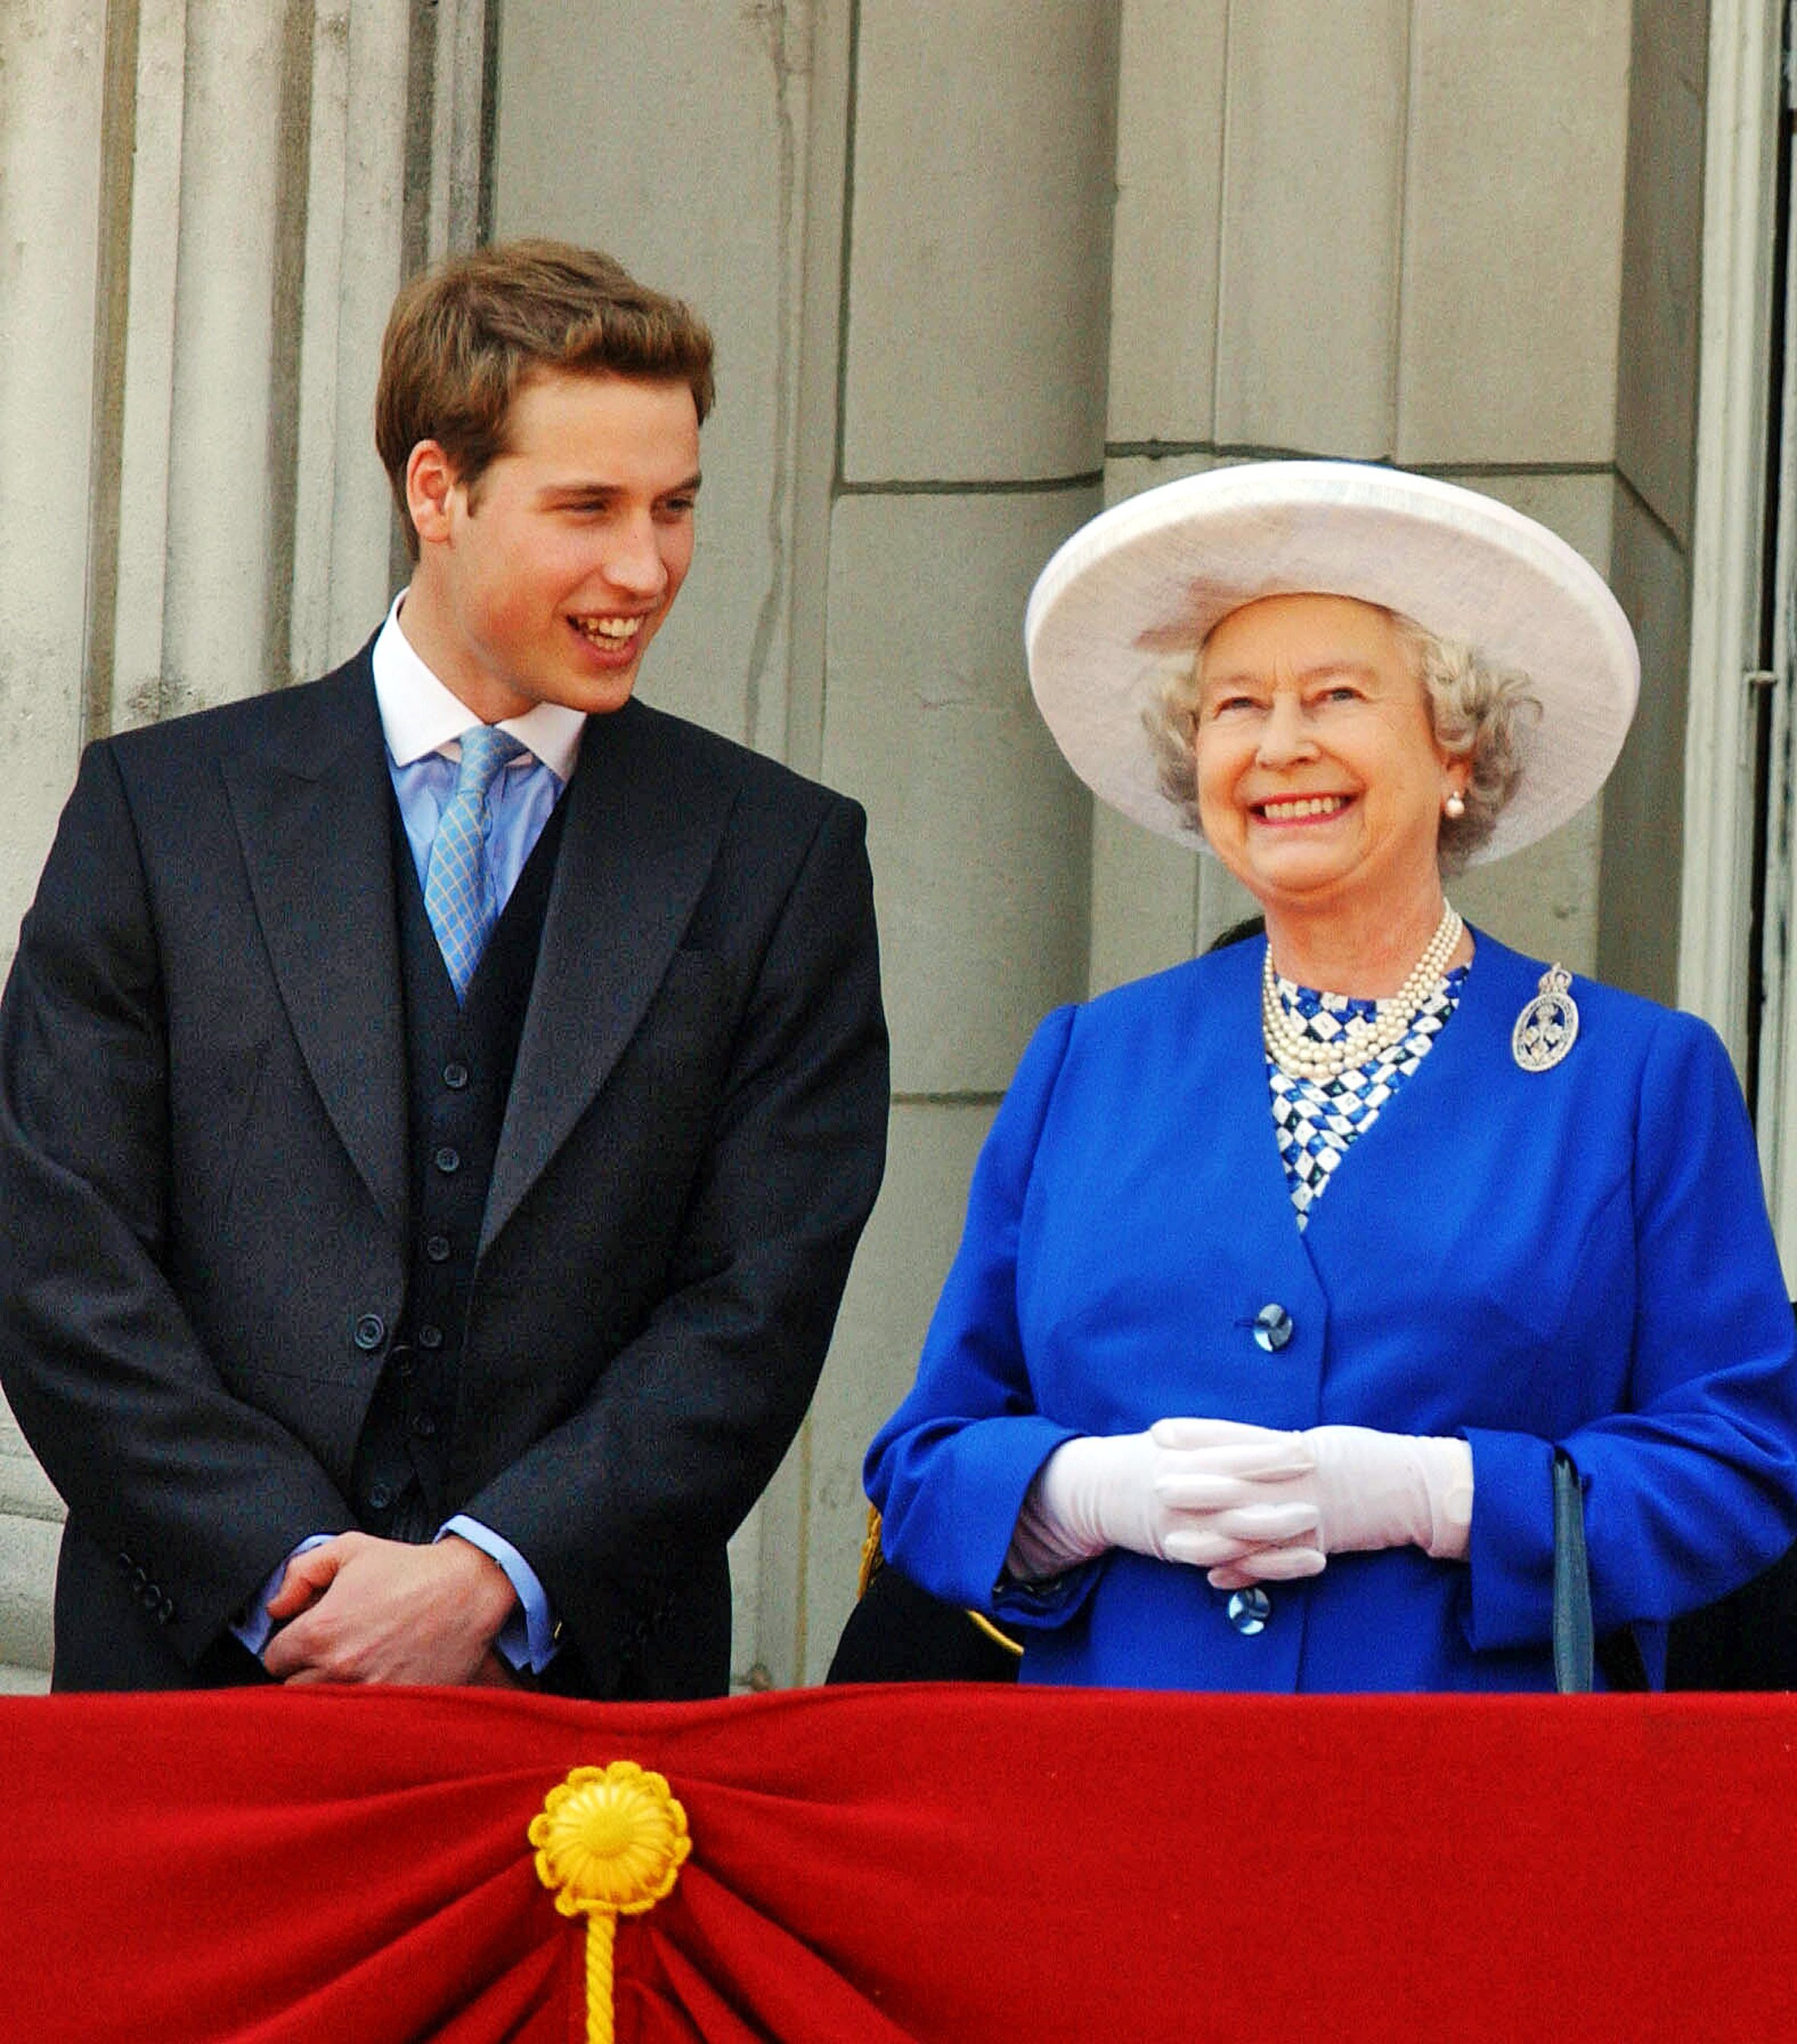 Königin Elizabeth II. mit ihrem Enkel Prinz William beim Anschauen von Trooping of the Colour auf dem Balkon des Buckingham Palace am 14. Juni 2003 in London, England ┃Quelle: Getty Images